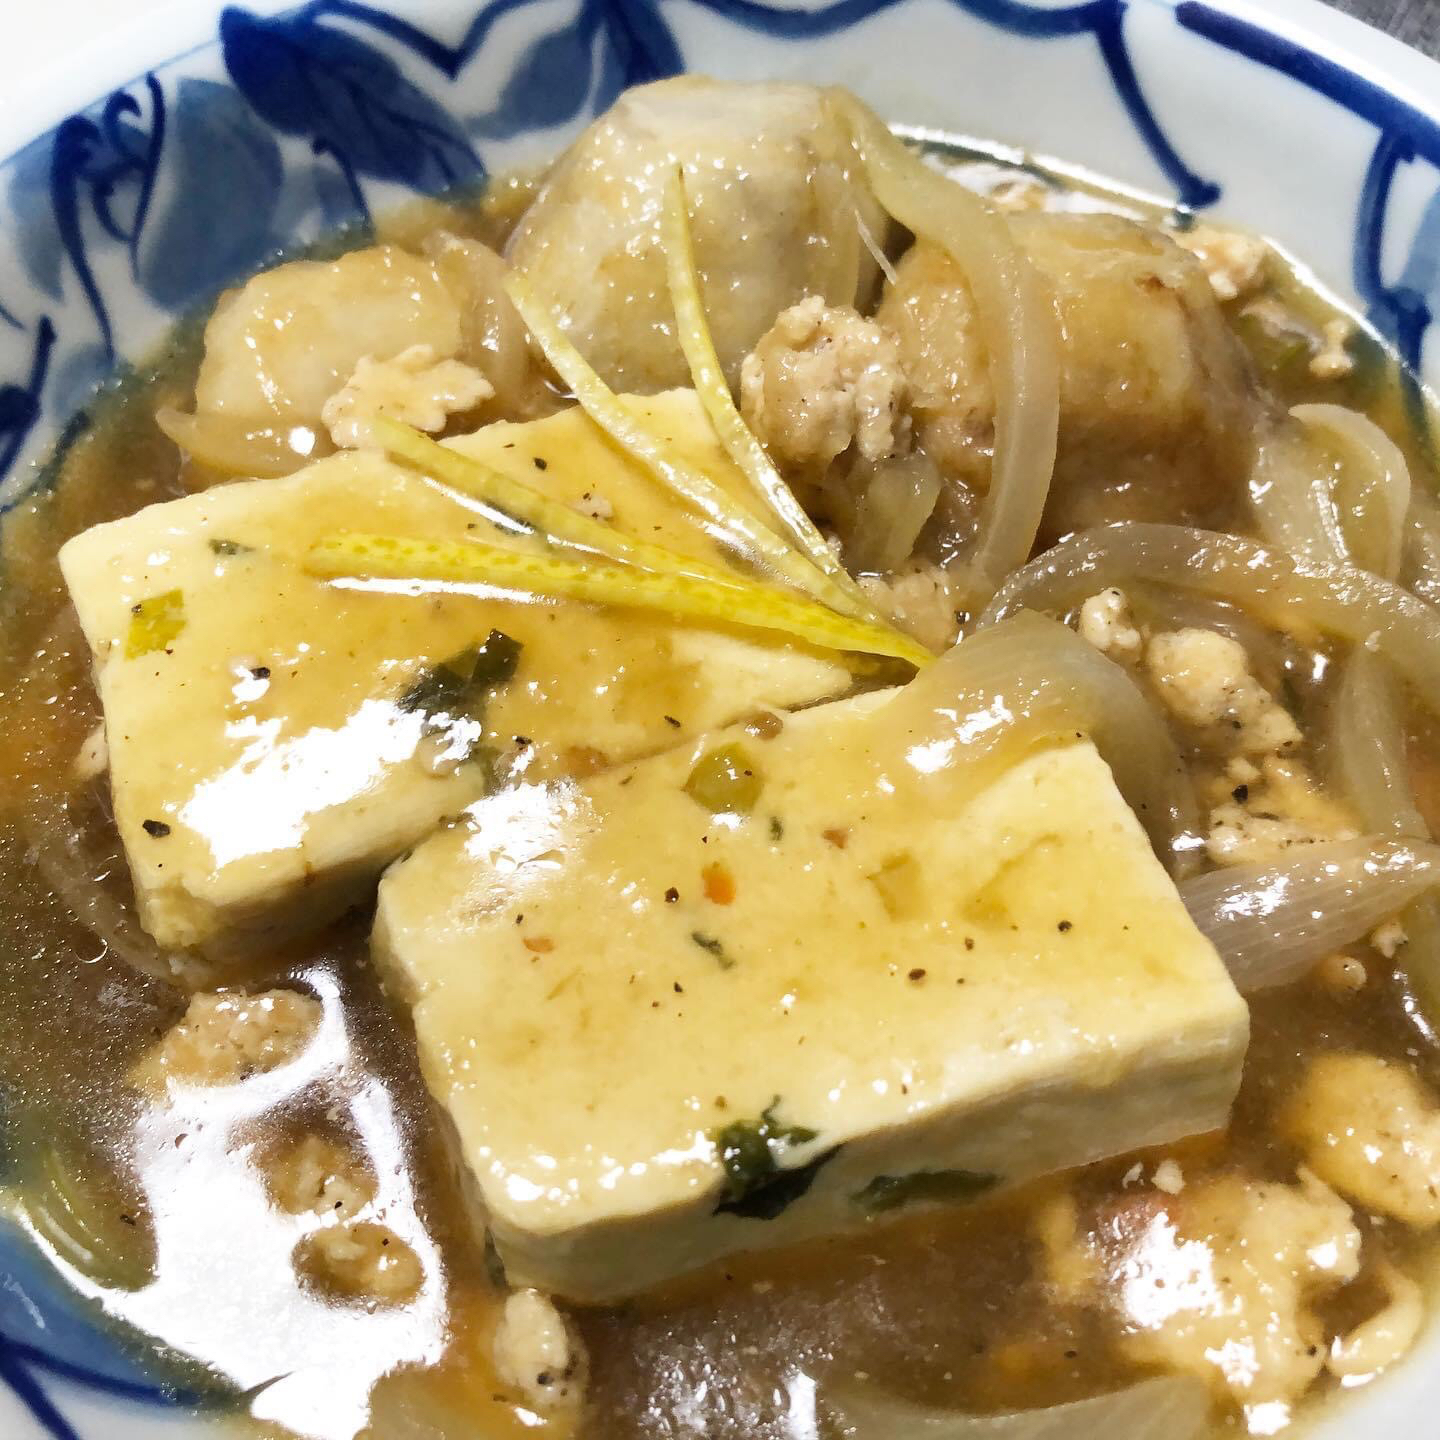 菜豆腐と揚げ里芋のあんかけ

野菜入りの豆腐と揚げ里芋を
鶏ミンチと玉ねぎいりのあんかけにしました。